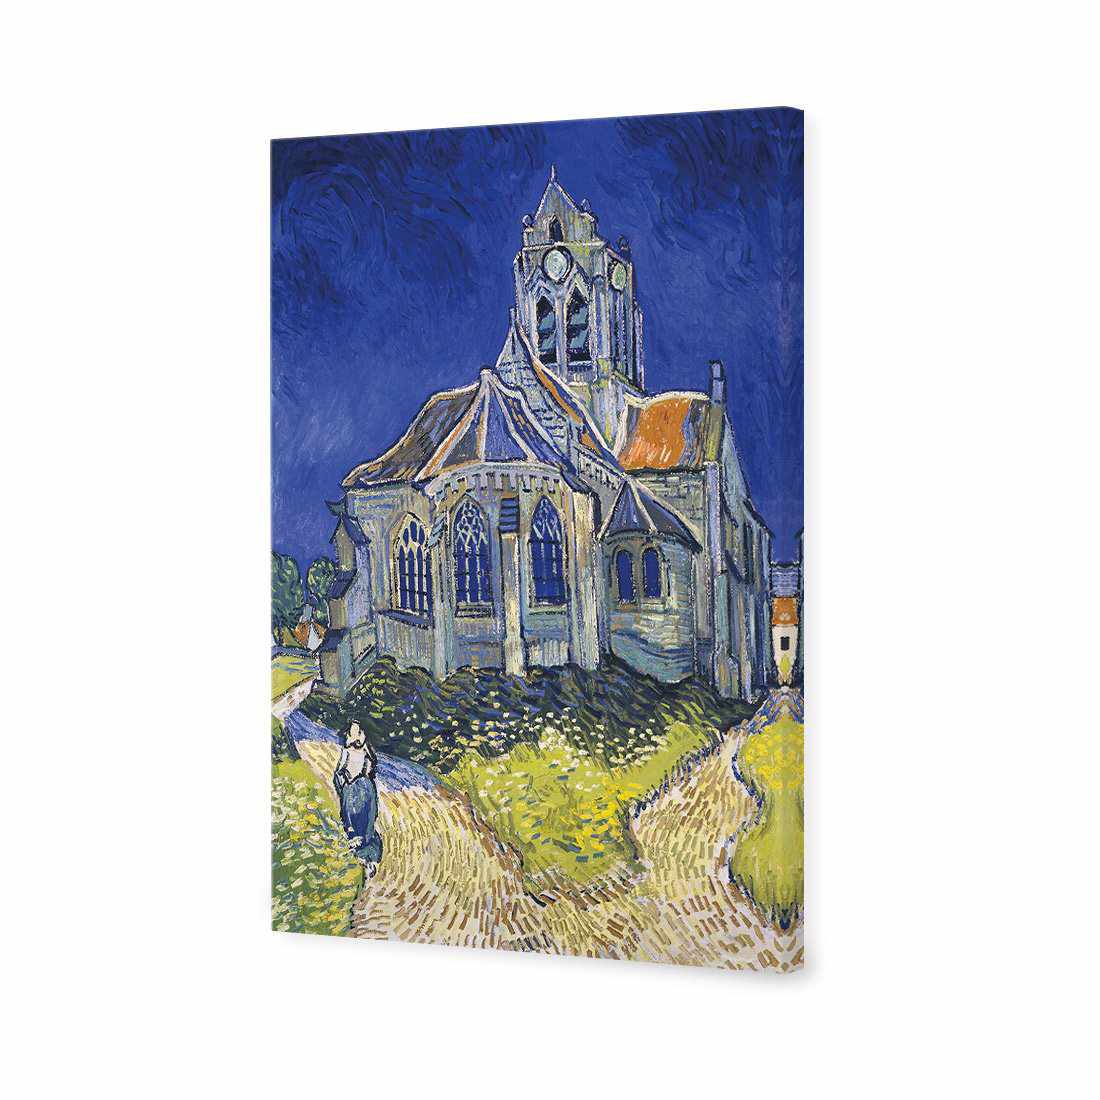 The Church At Auvers - Van Gogh Canvas Art-Canvas-Wall Art Designs-45x30cm-Canvas - No Frame-Wall Art Designs